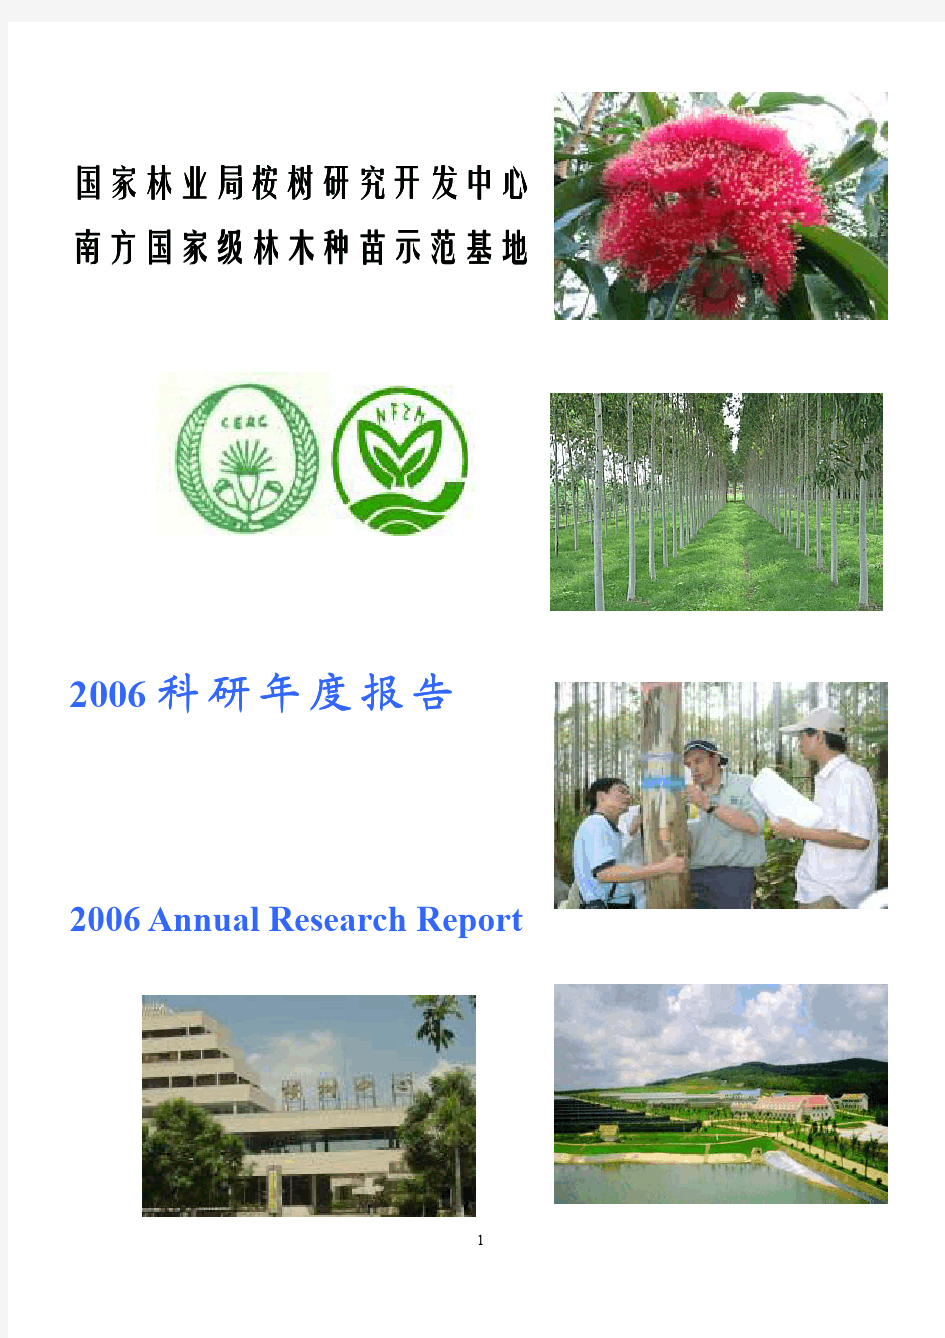 桉树中心2006年科研报告